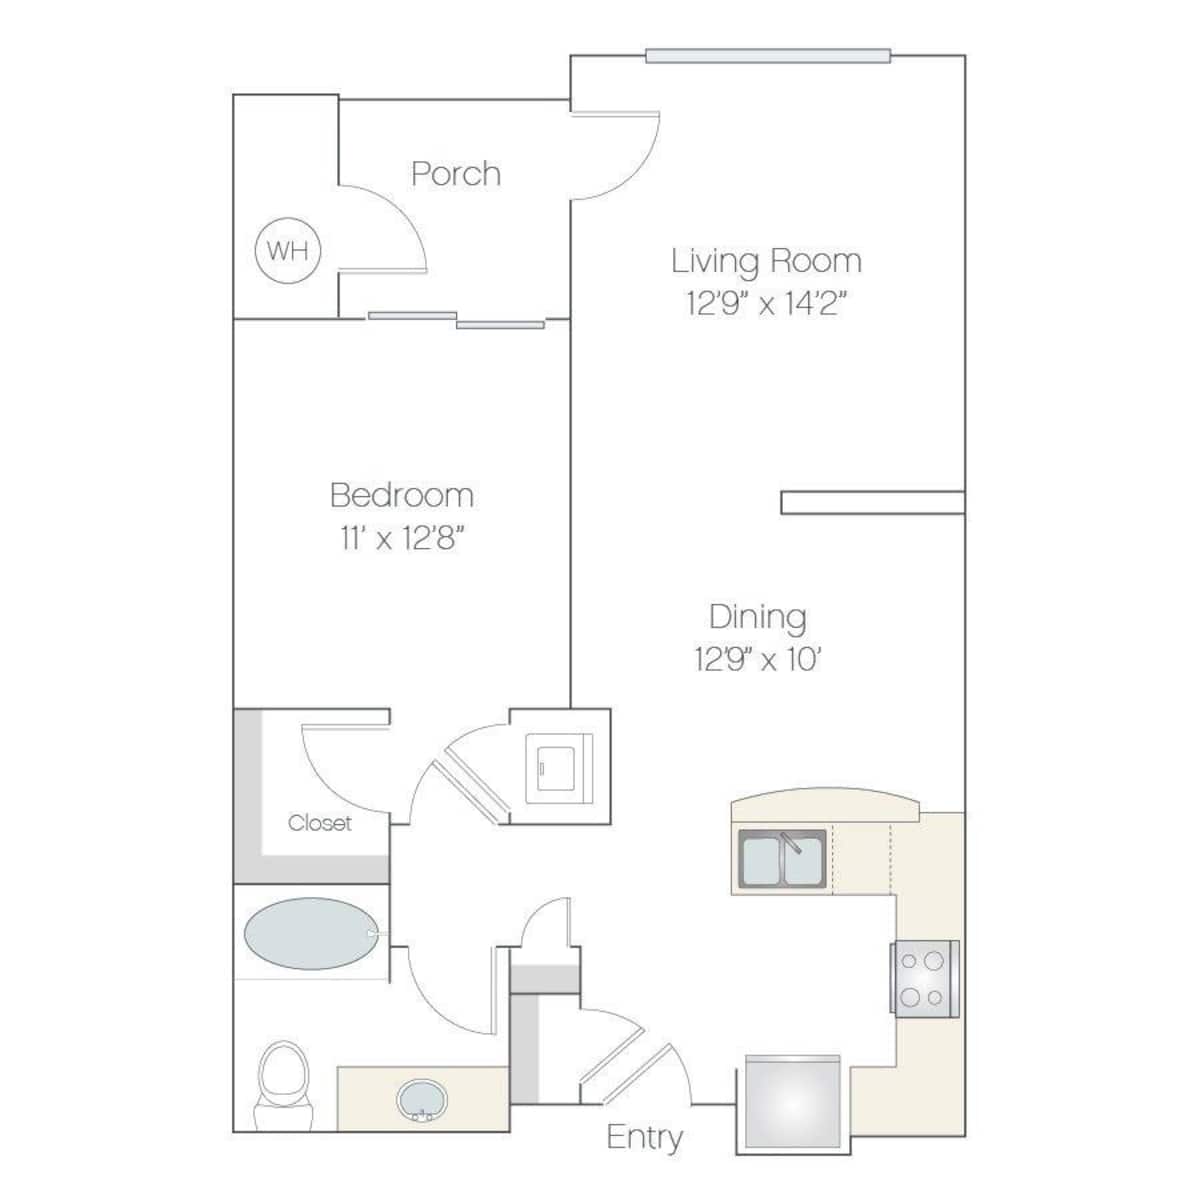 Floorplan diagram for A1.GR, showing 1 bedroom